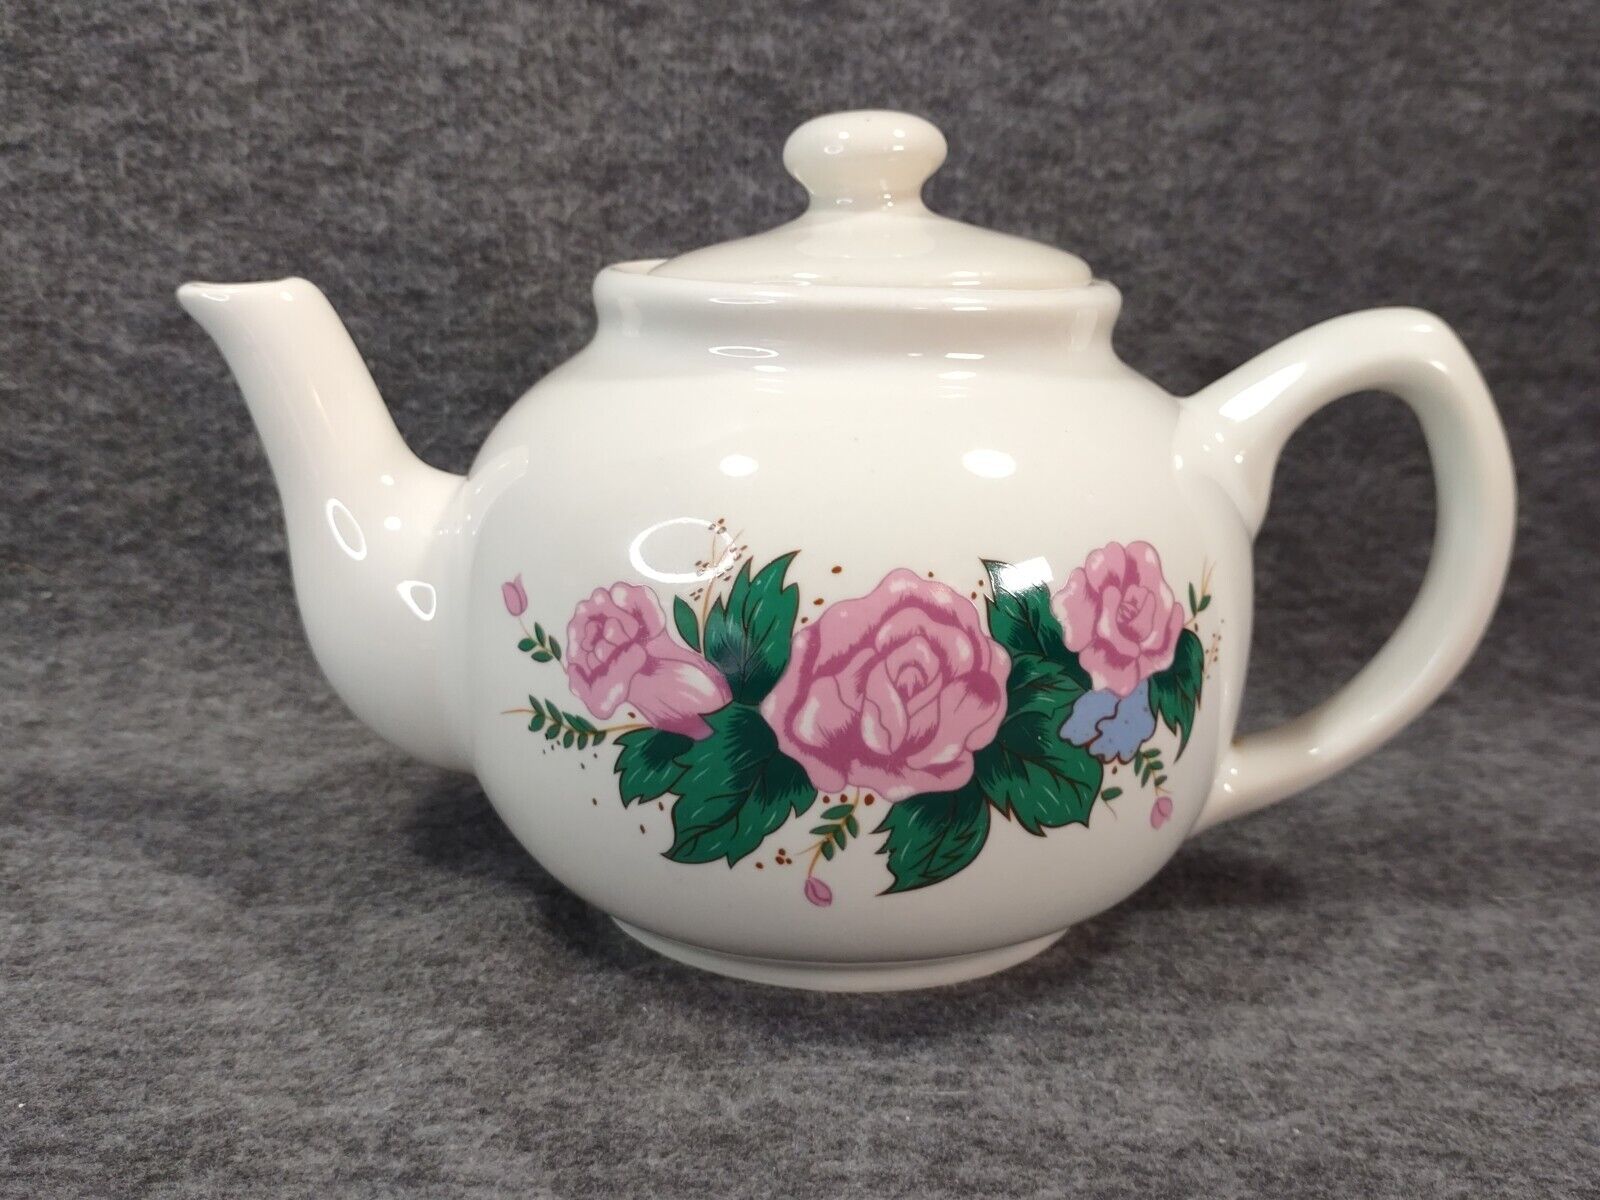 Interpur White Teapot W/ Pink Roses 1989 - 5” Vintage Tea Party - Taiwan 